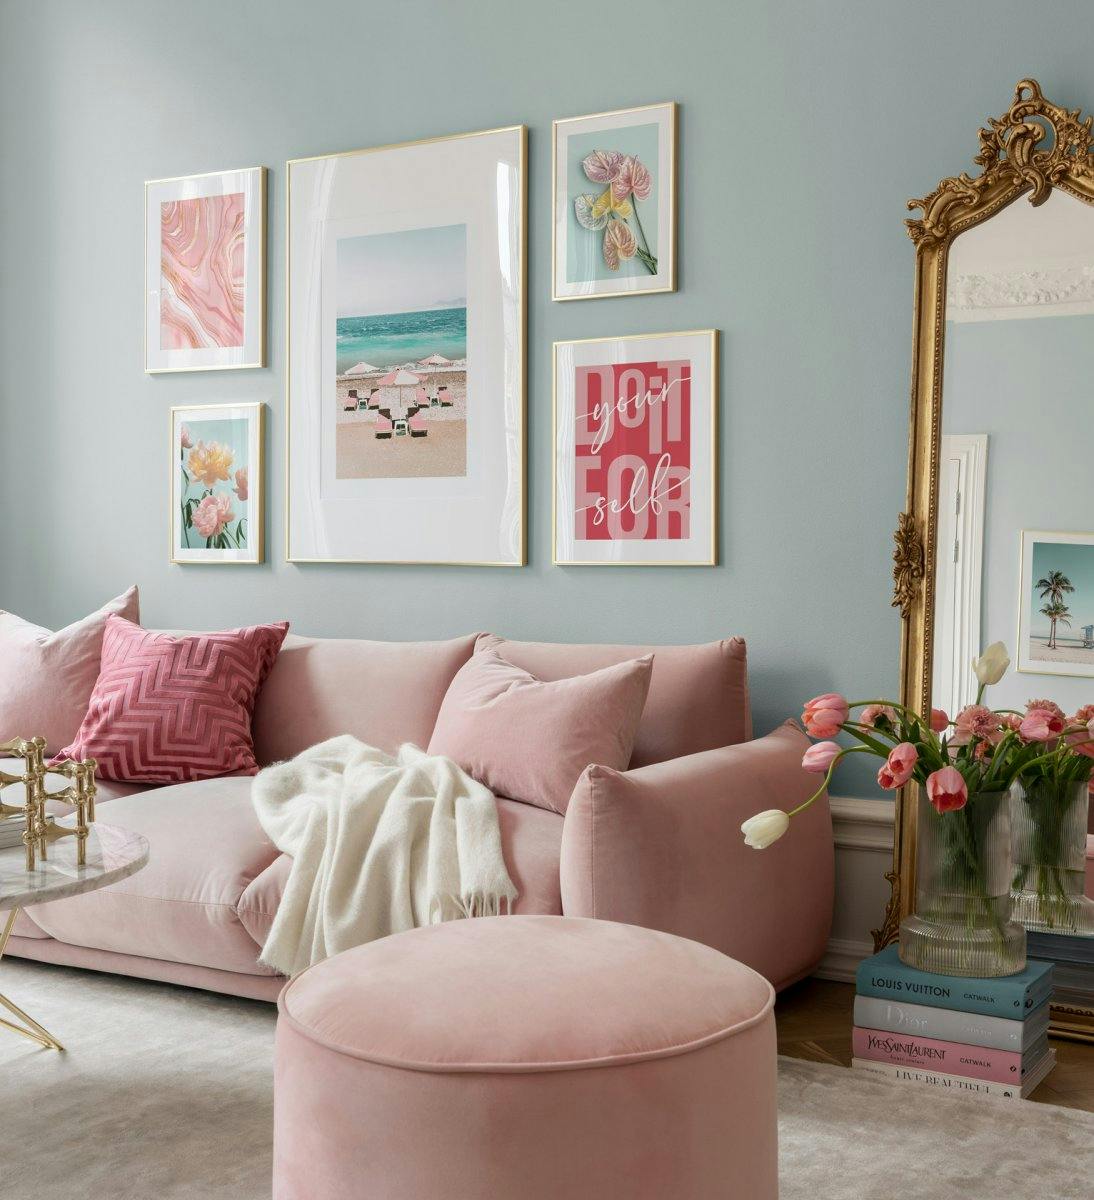 Fotografías alegres y citas en colores pastel que crean una habitación que radia modernismo